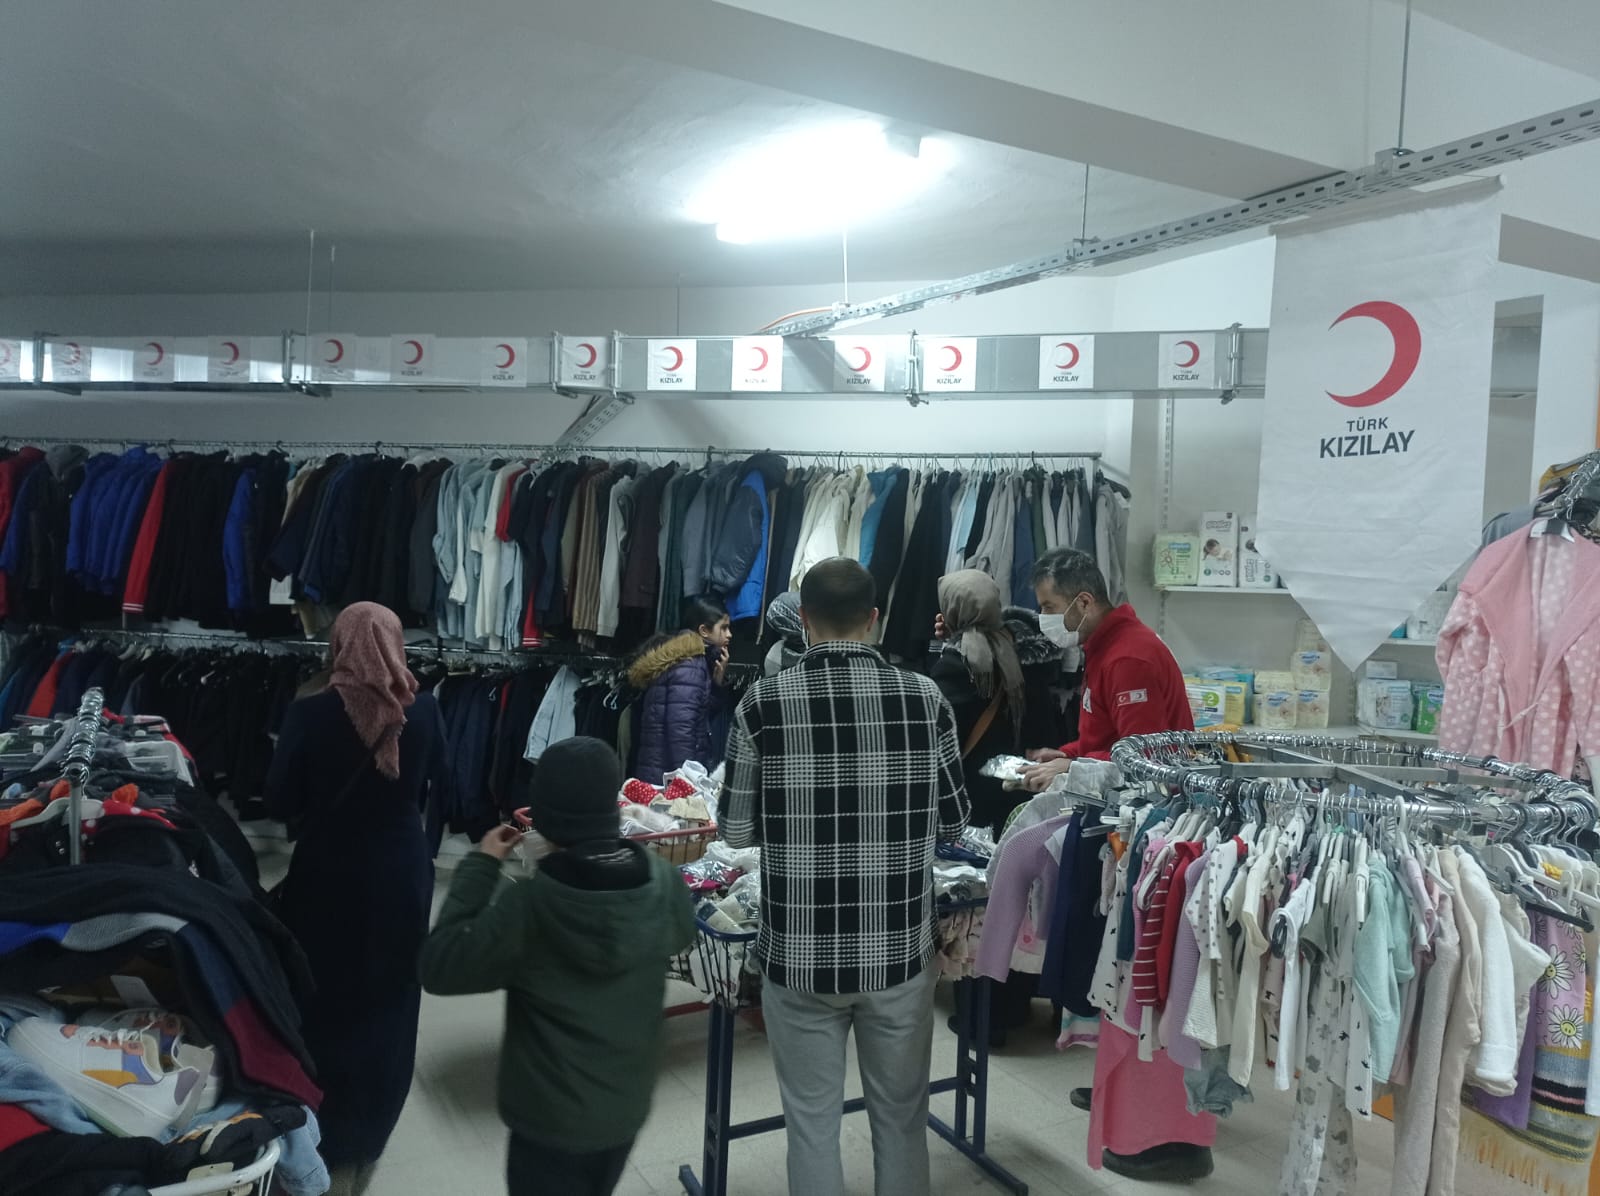 Türk Kızılay Elazığ şubesi olarak ihtiyaç sahiplerimiz için butik mağazamızda kıyafet dağıtımlarımıza devam ediyoruz🌙 (6)